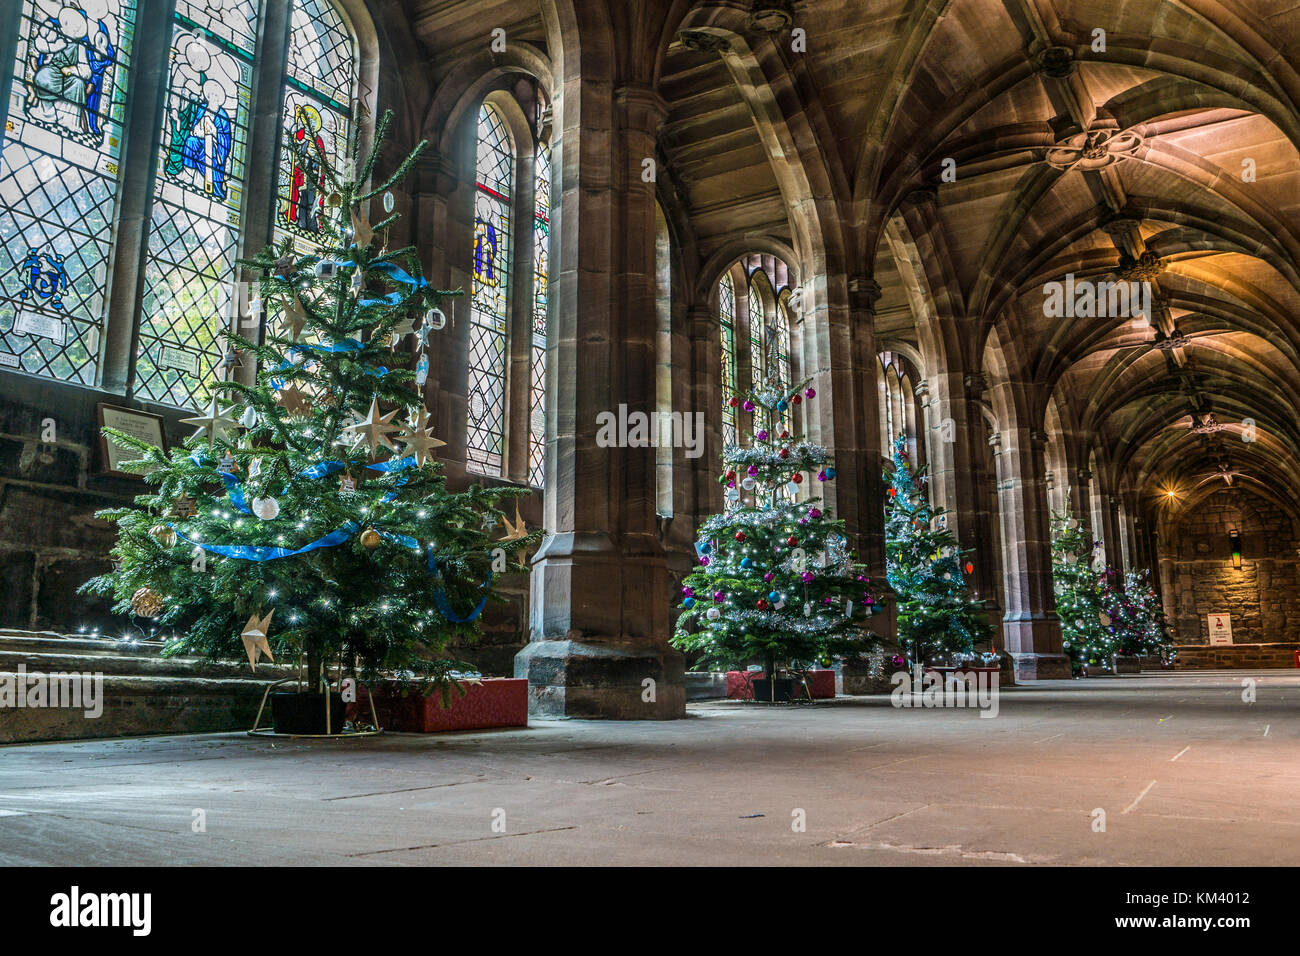 Weihnachtsbäume auf Anzeige an der Kathedrale von Chester, UK. Stockfoto